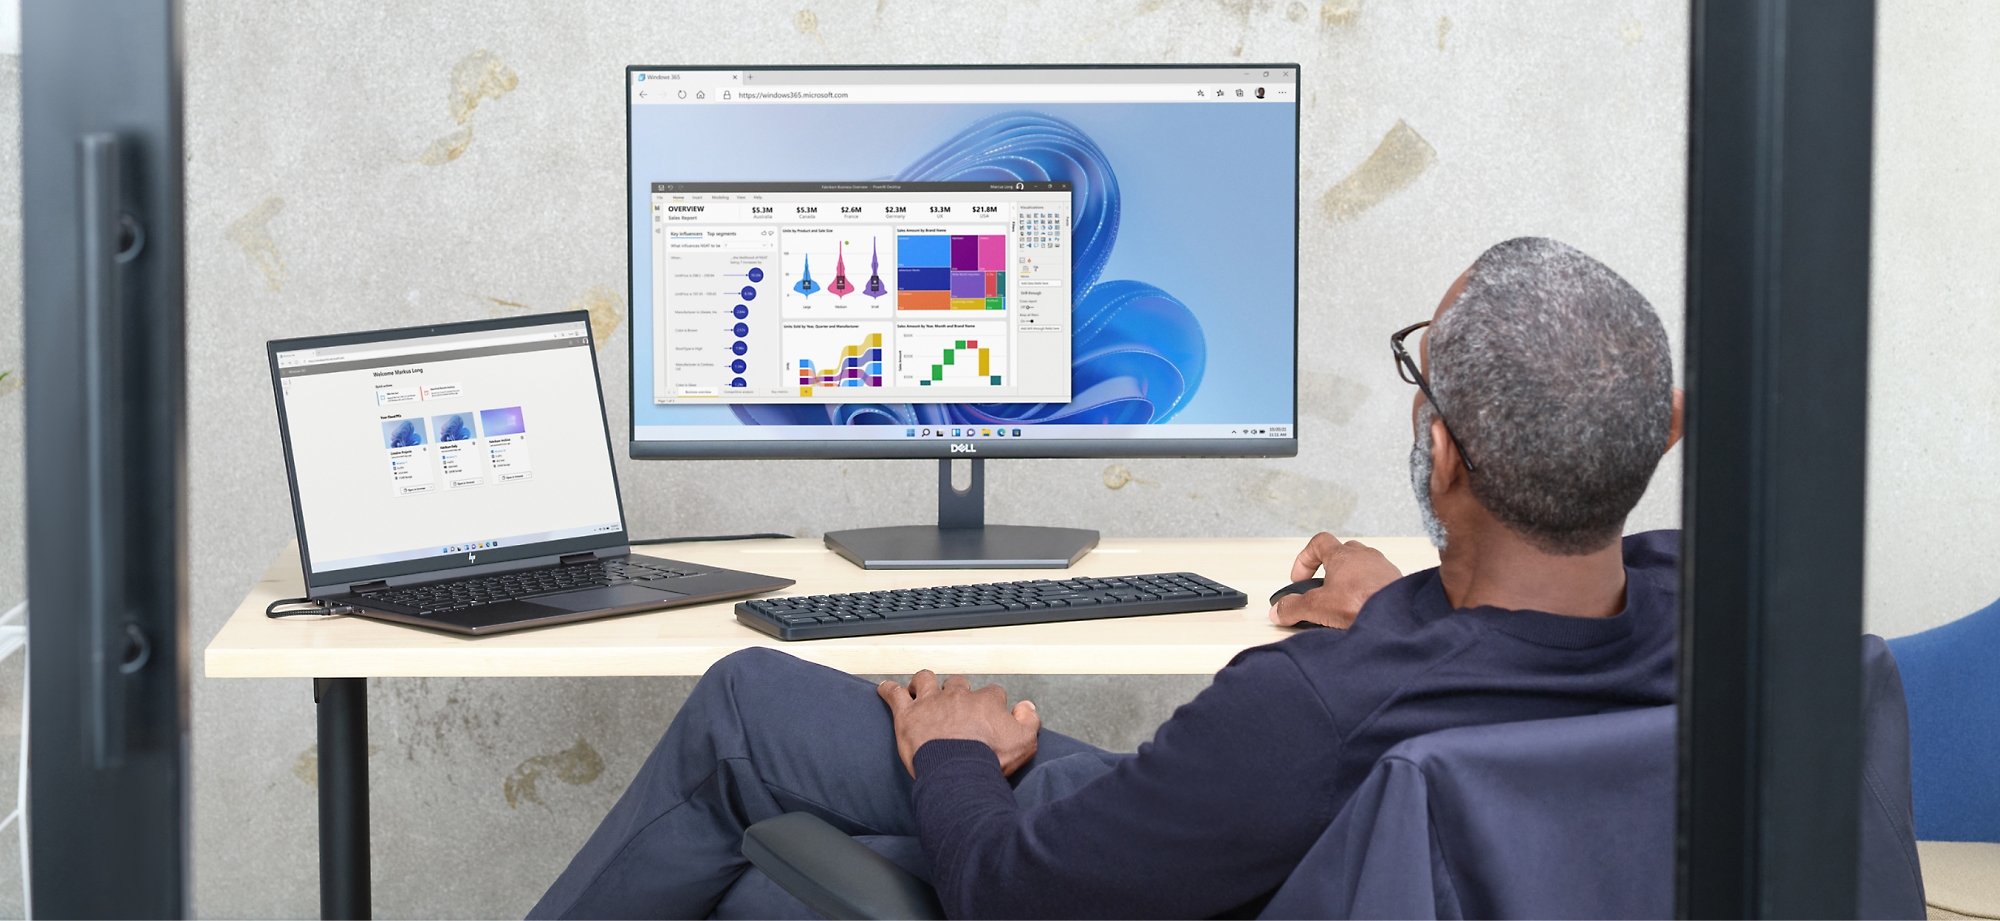 Um homem analisa gráficos de dados num ecrã de computador e portátil num ambiente de escritório.